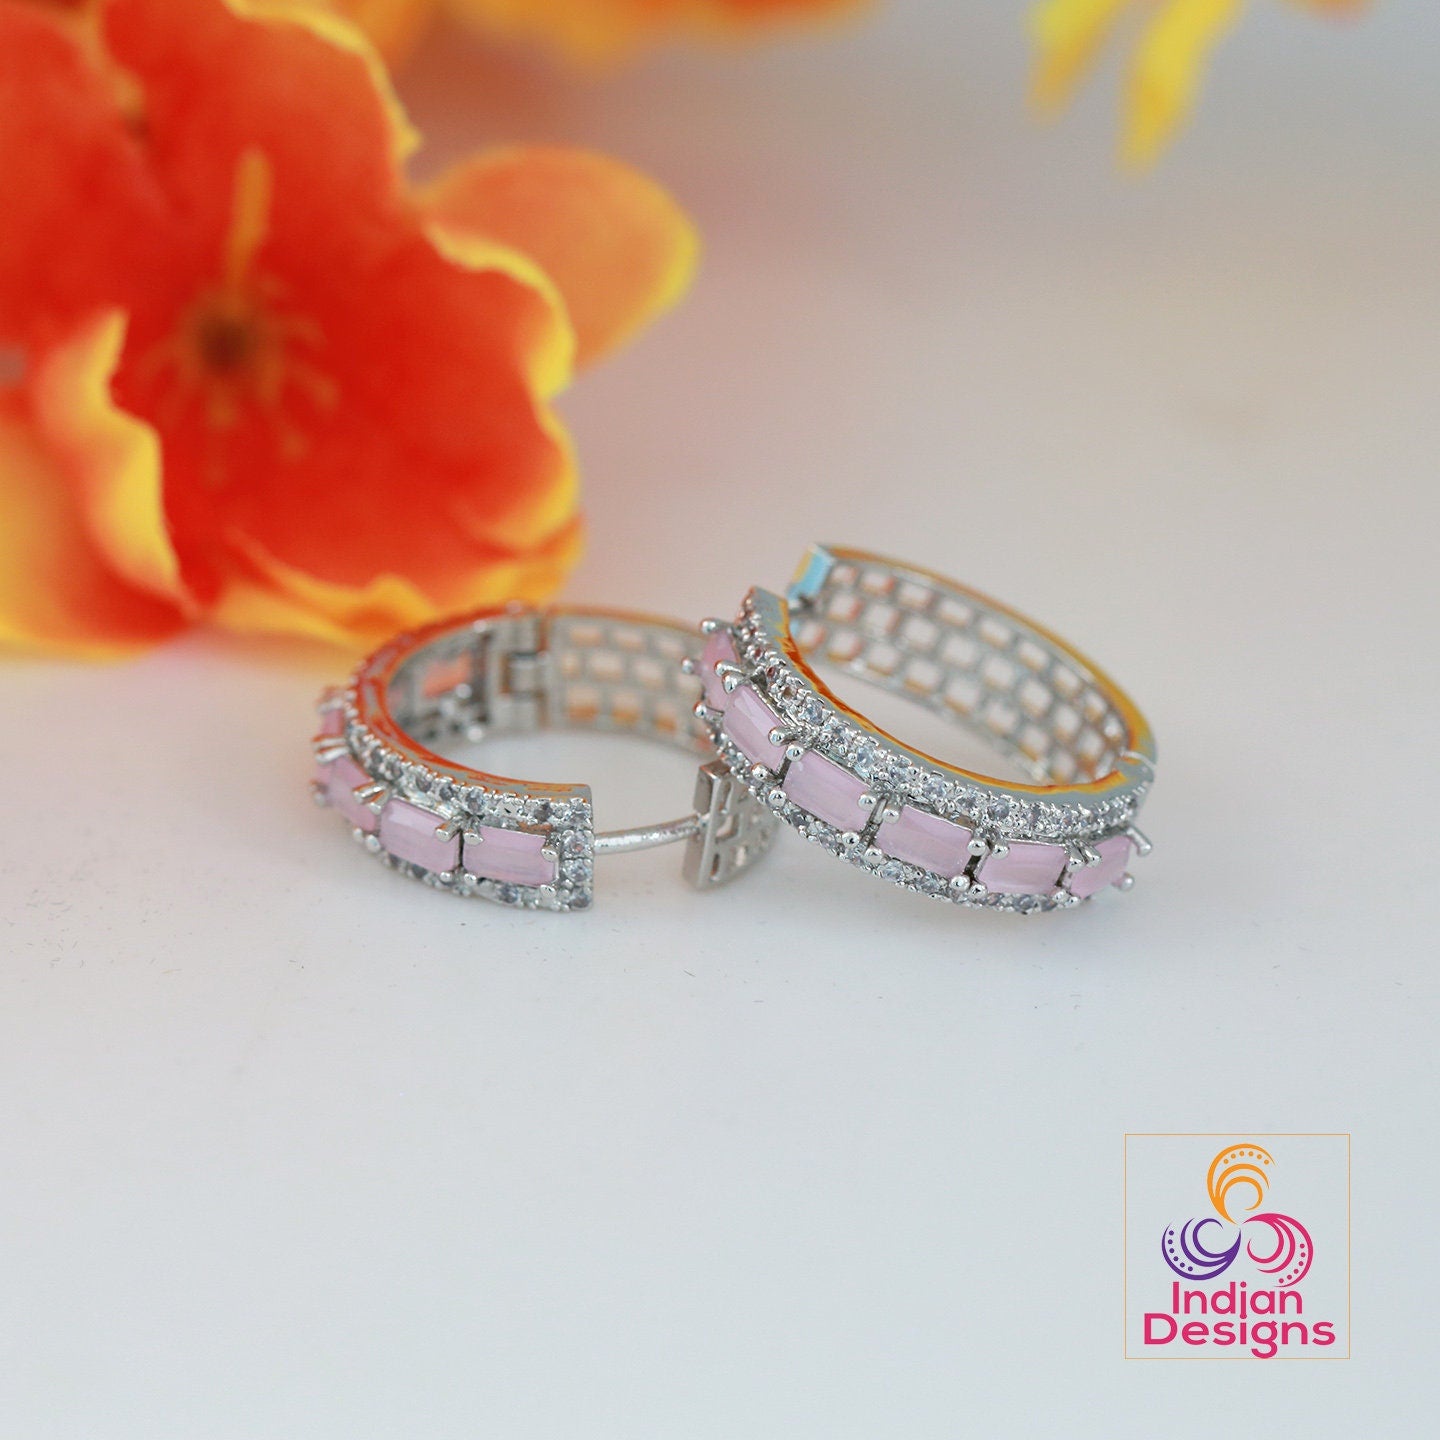 Minimalist CZ diamond Small hoop Earrings | American diamond Silver AD crystal hoop Earrings | Pink stone hoops | Earrings at Indian Designs